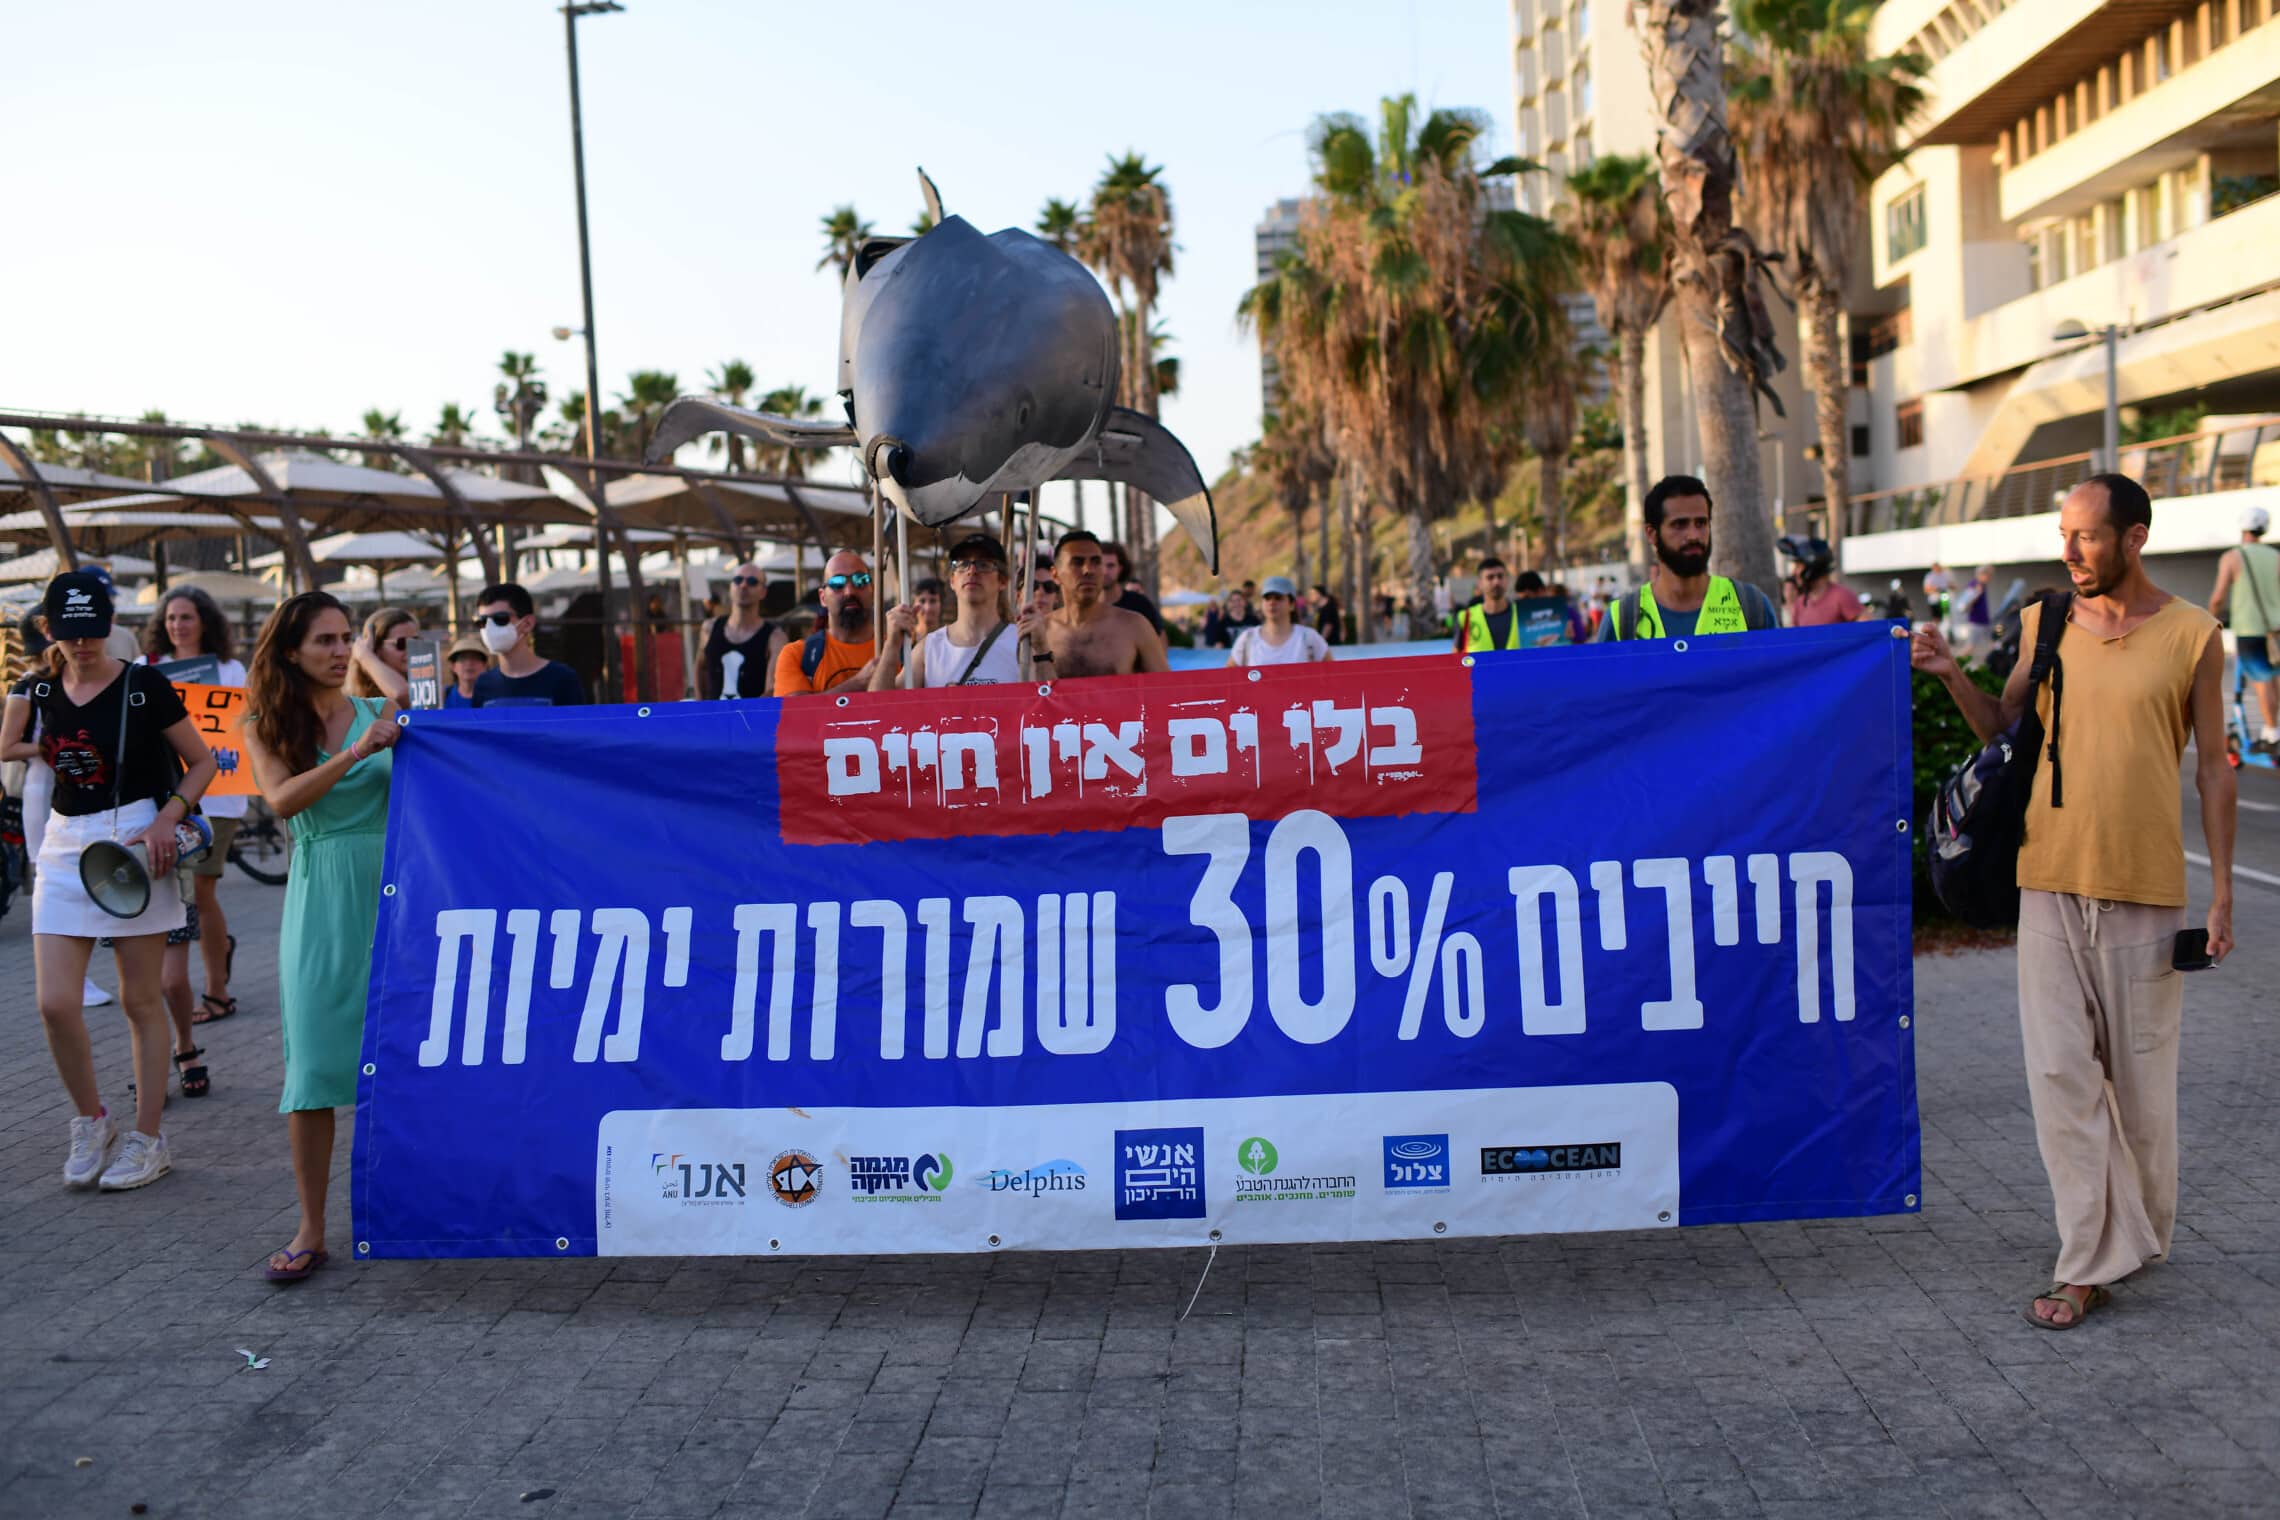 הפגנה נגד הרס הים. תל אביב, 9 ביוני 2022 (צילום: Tomer Neuberg/Flash90)